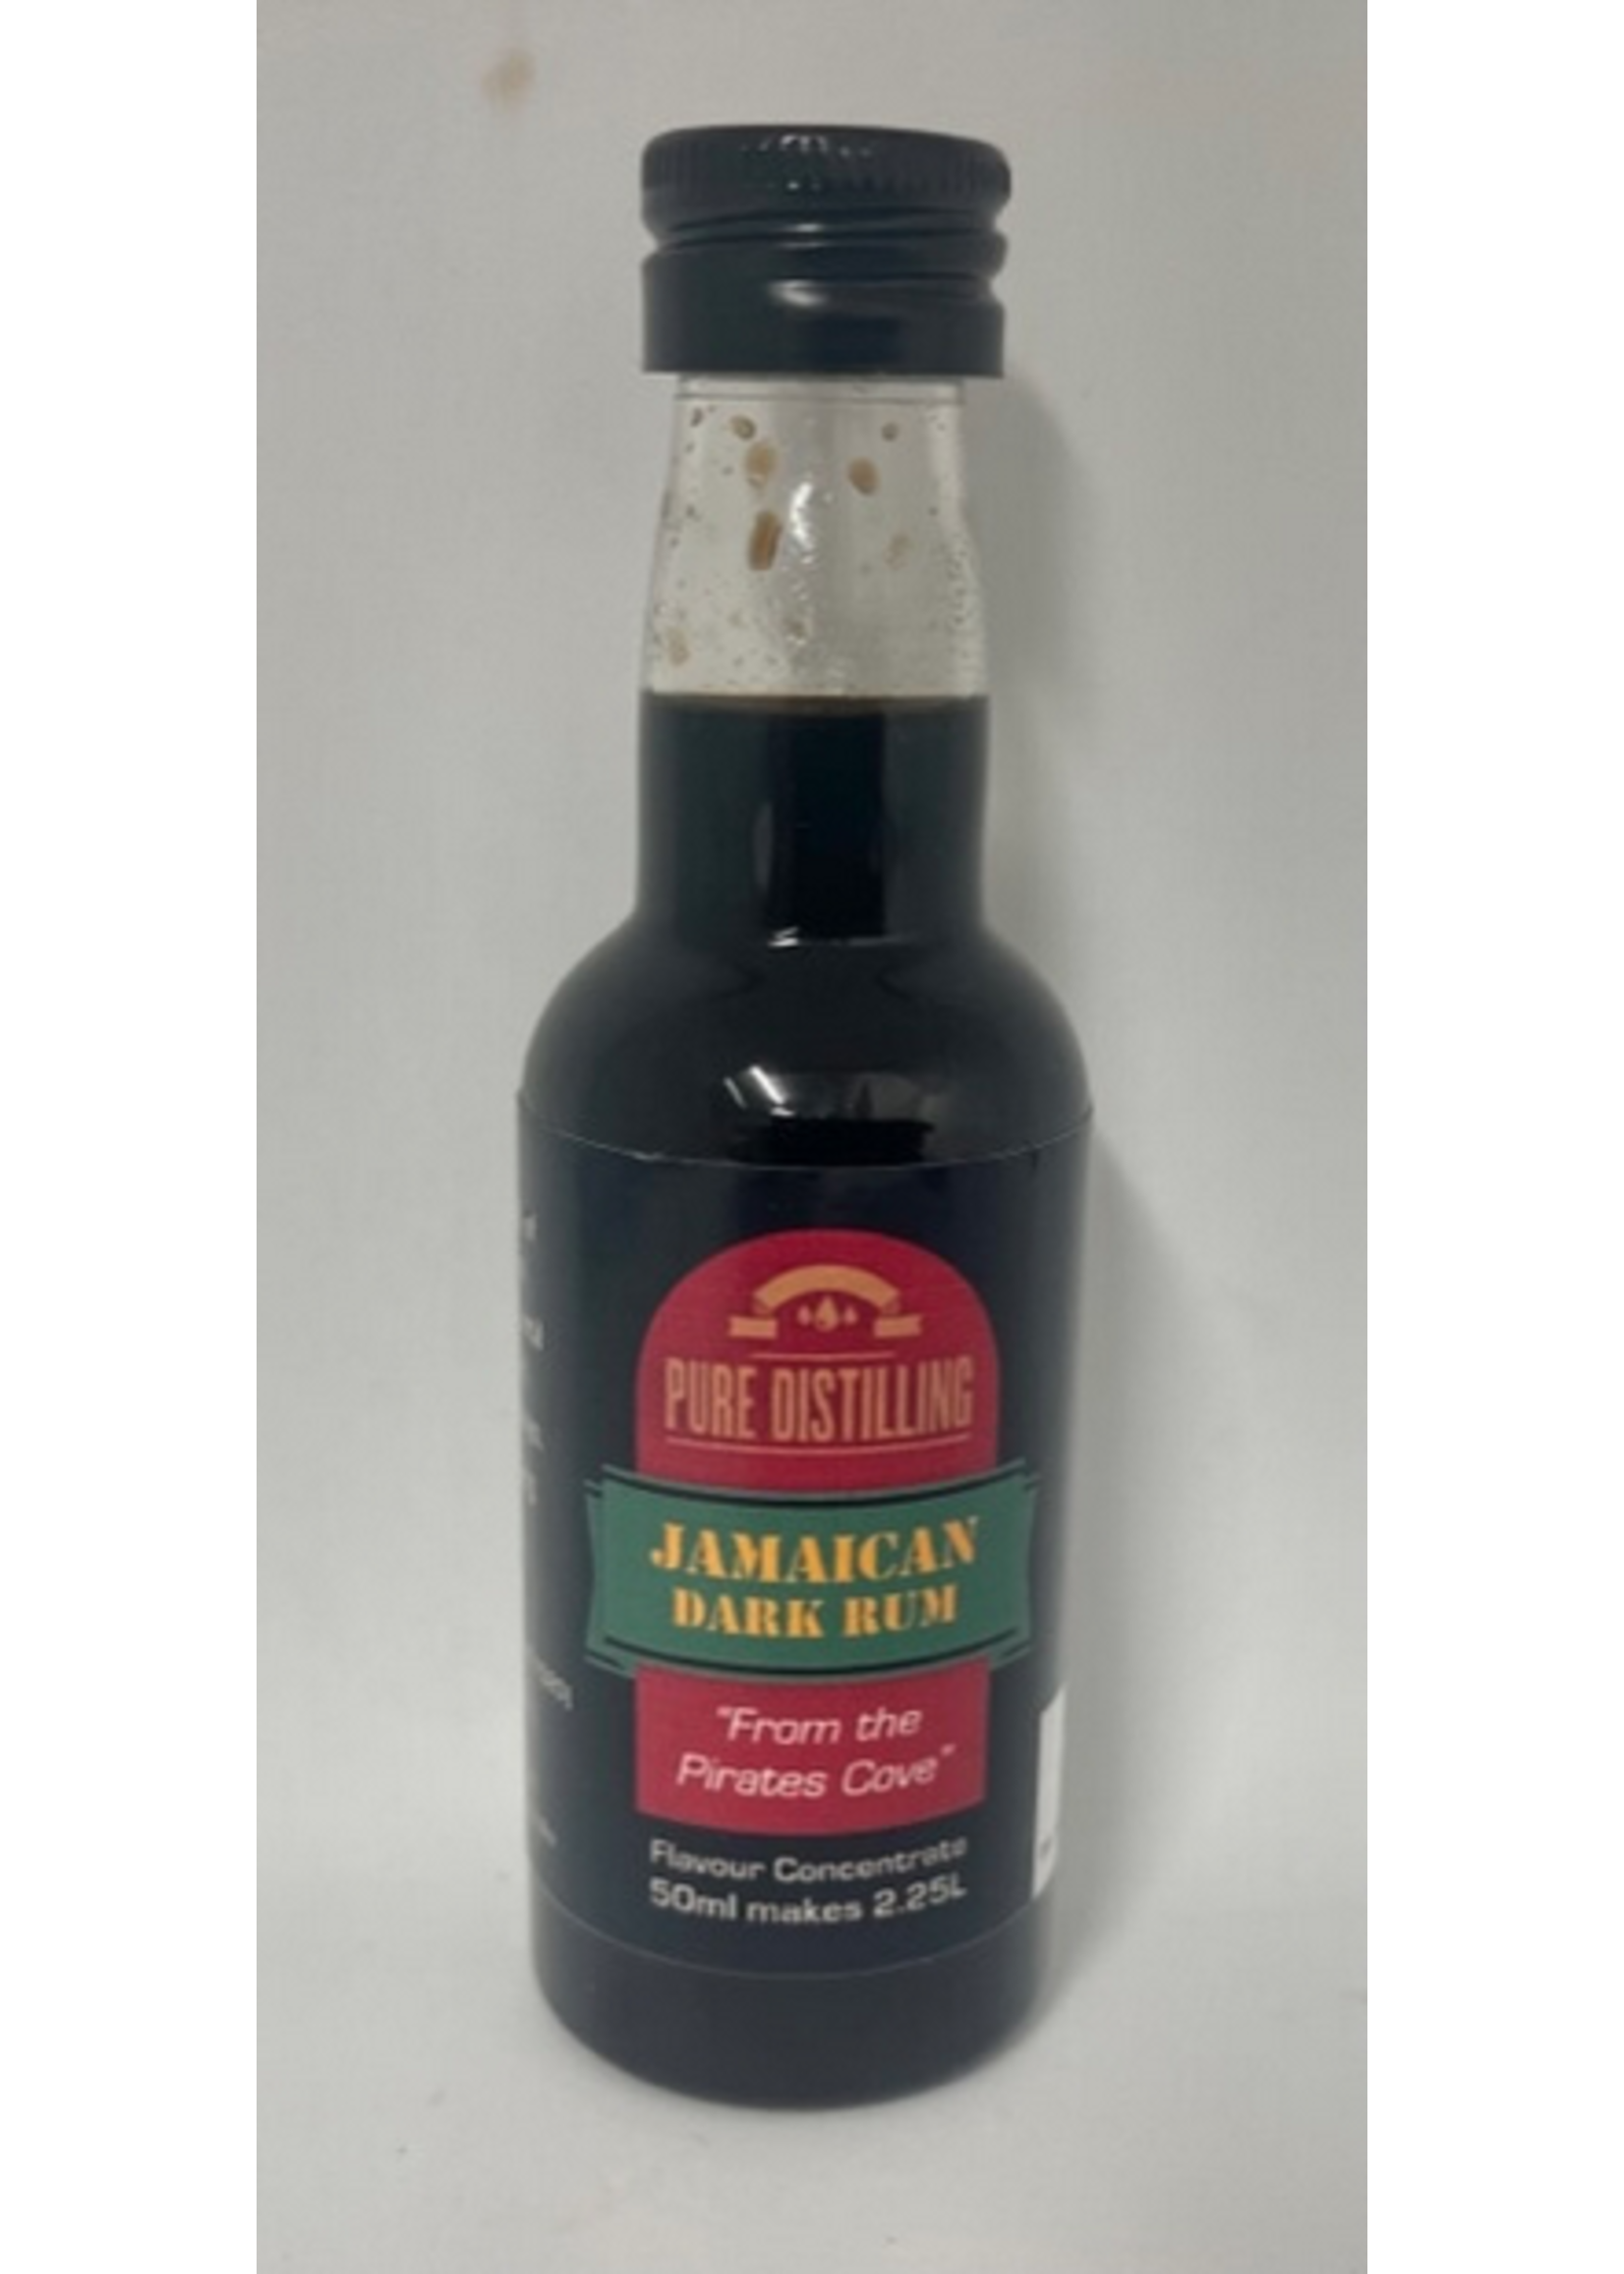 Pure distilling Pure Distilling Jamaican Dark Rum